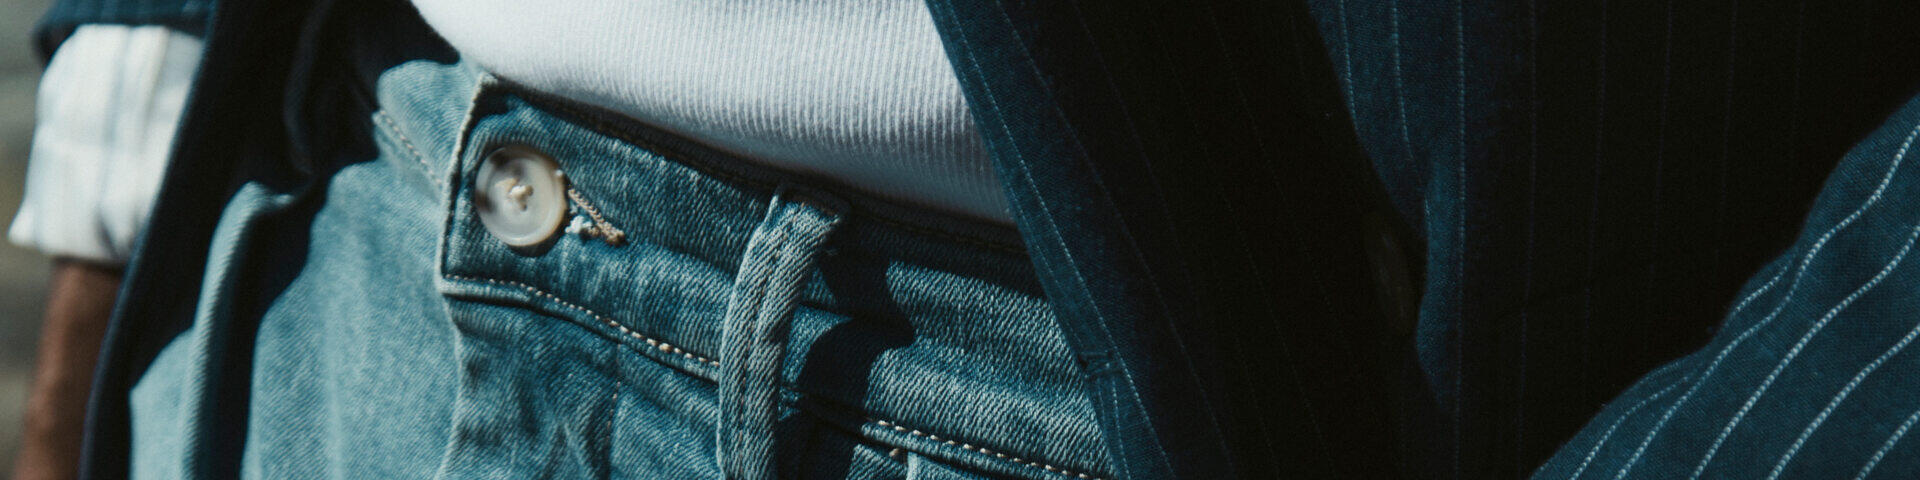 Cool komfort - Superflex jeans